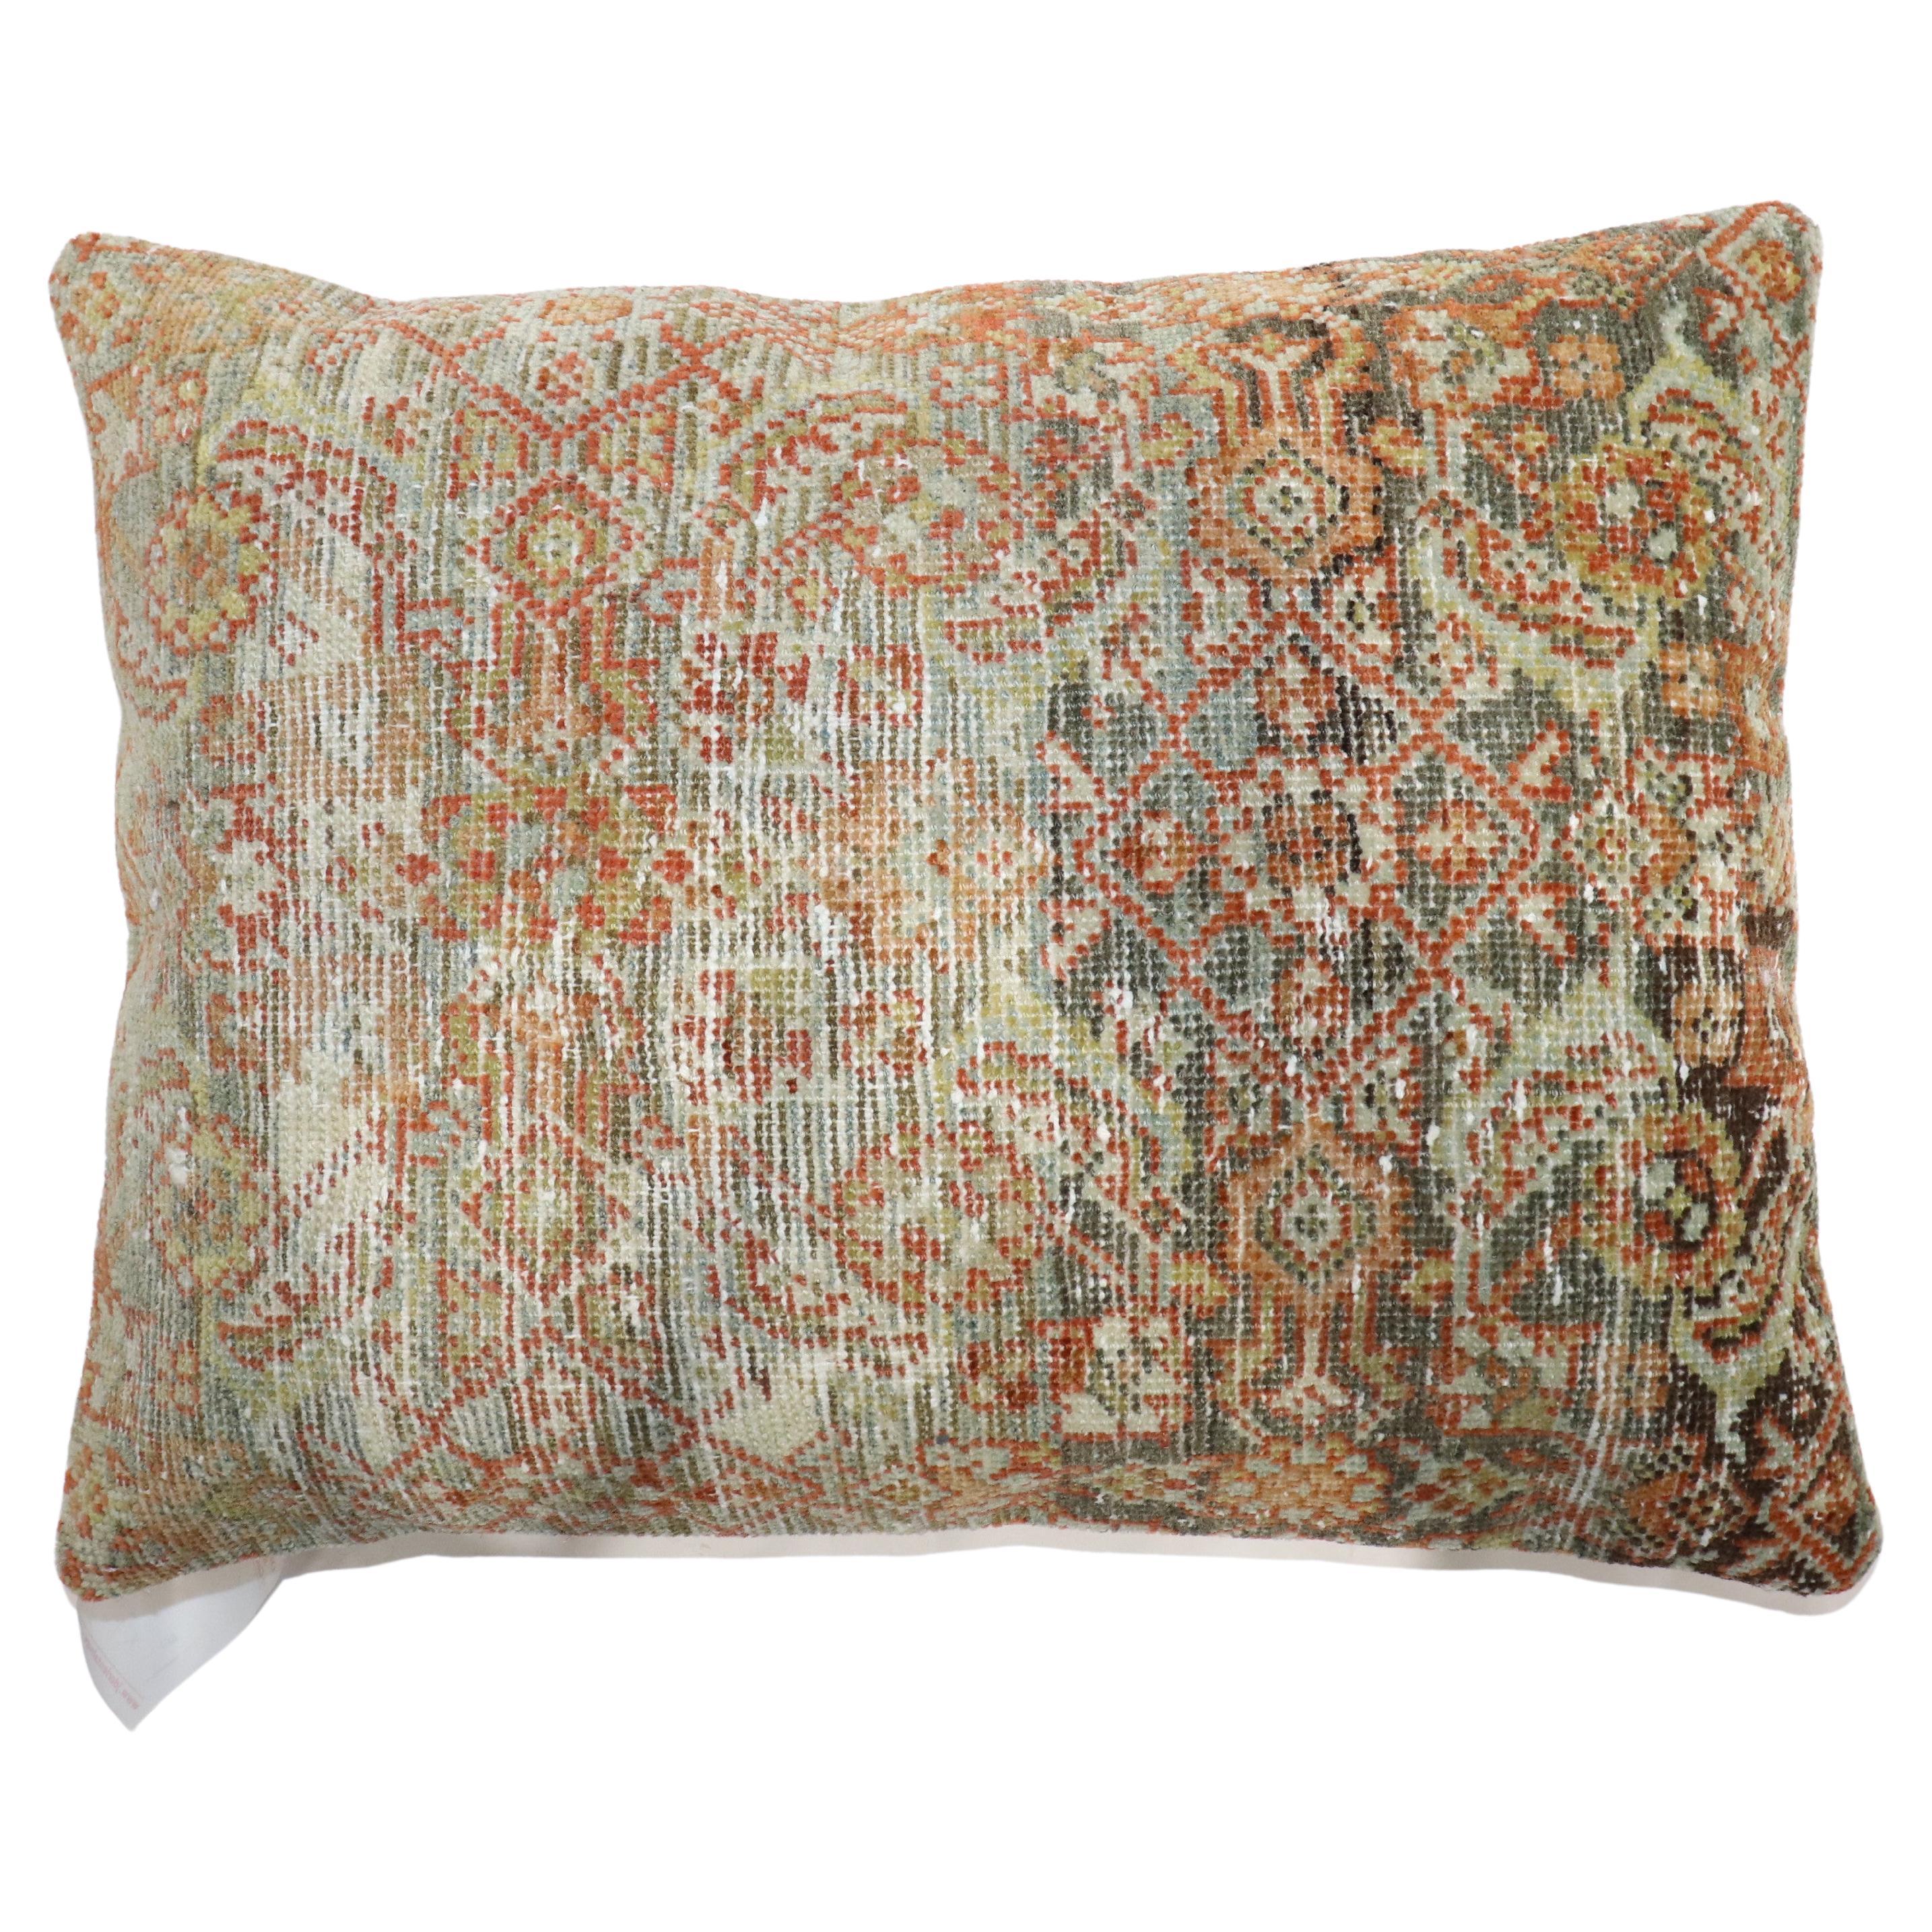 Kissen aus einem antiken persischen Mahal-Teppich mit Baumwollrücken.

Maße: 17'' x 22''.